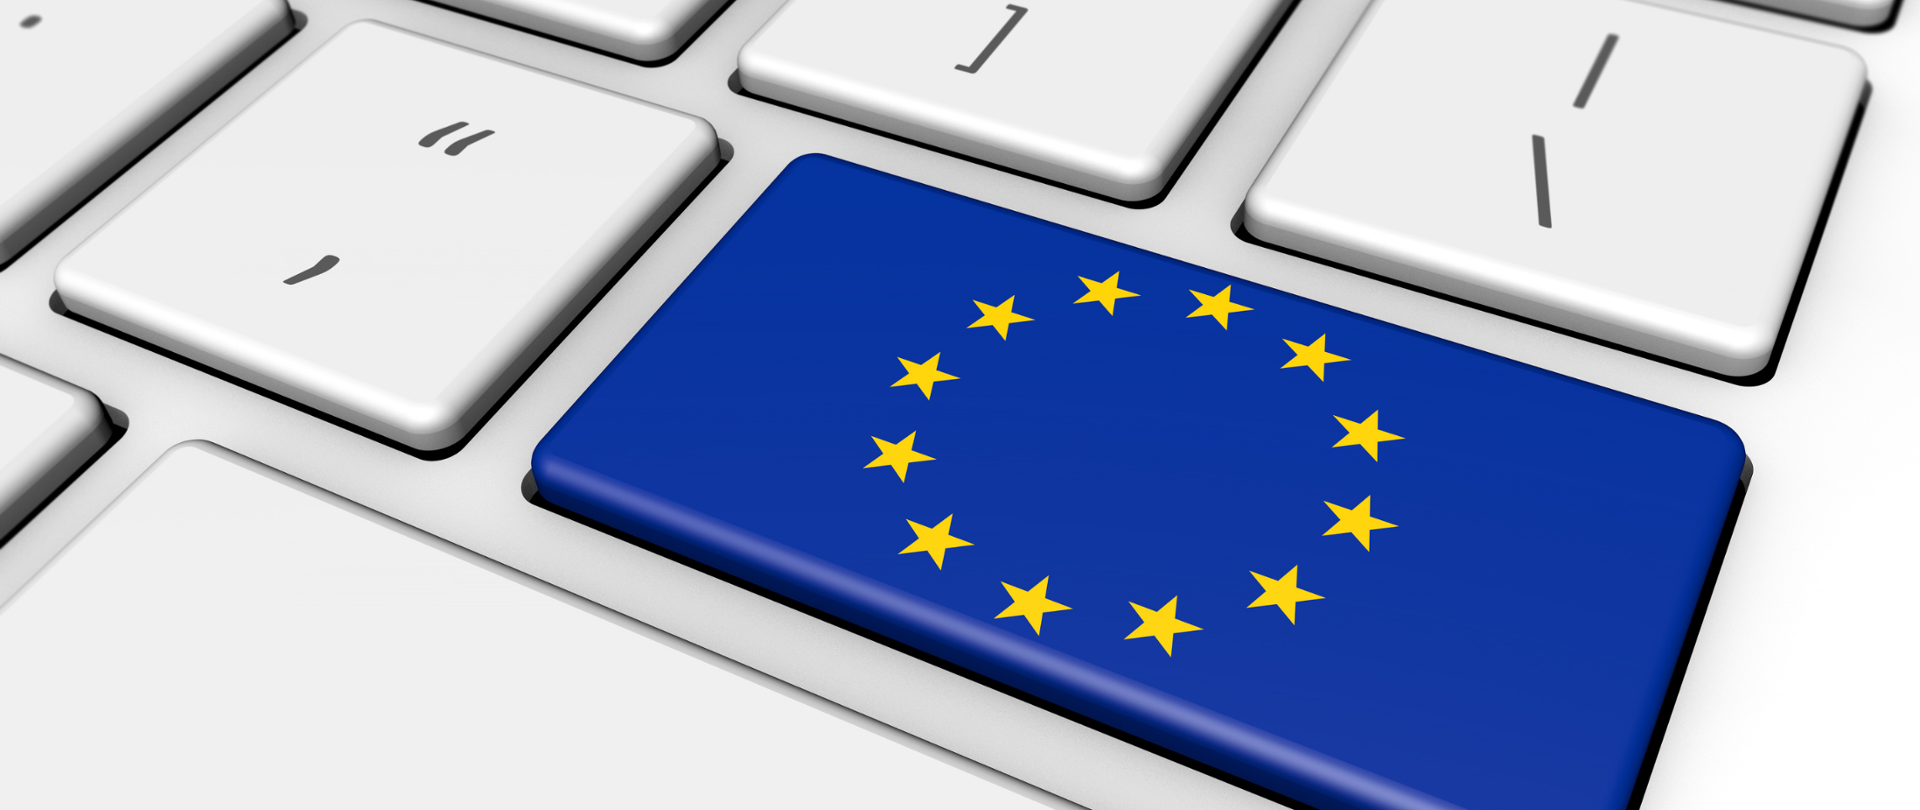 Biała klawiatura komputerowa - zbliżenie na klawisz "Enter". Na klawiszu flaga Unii Europejskiej.